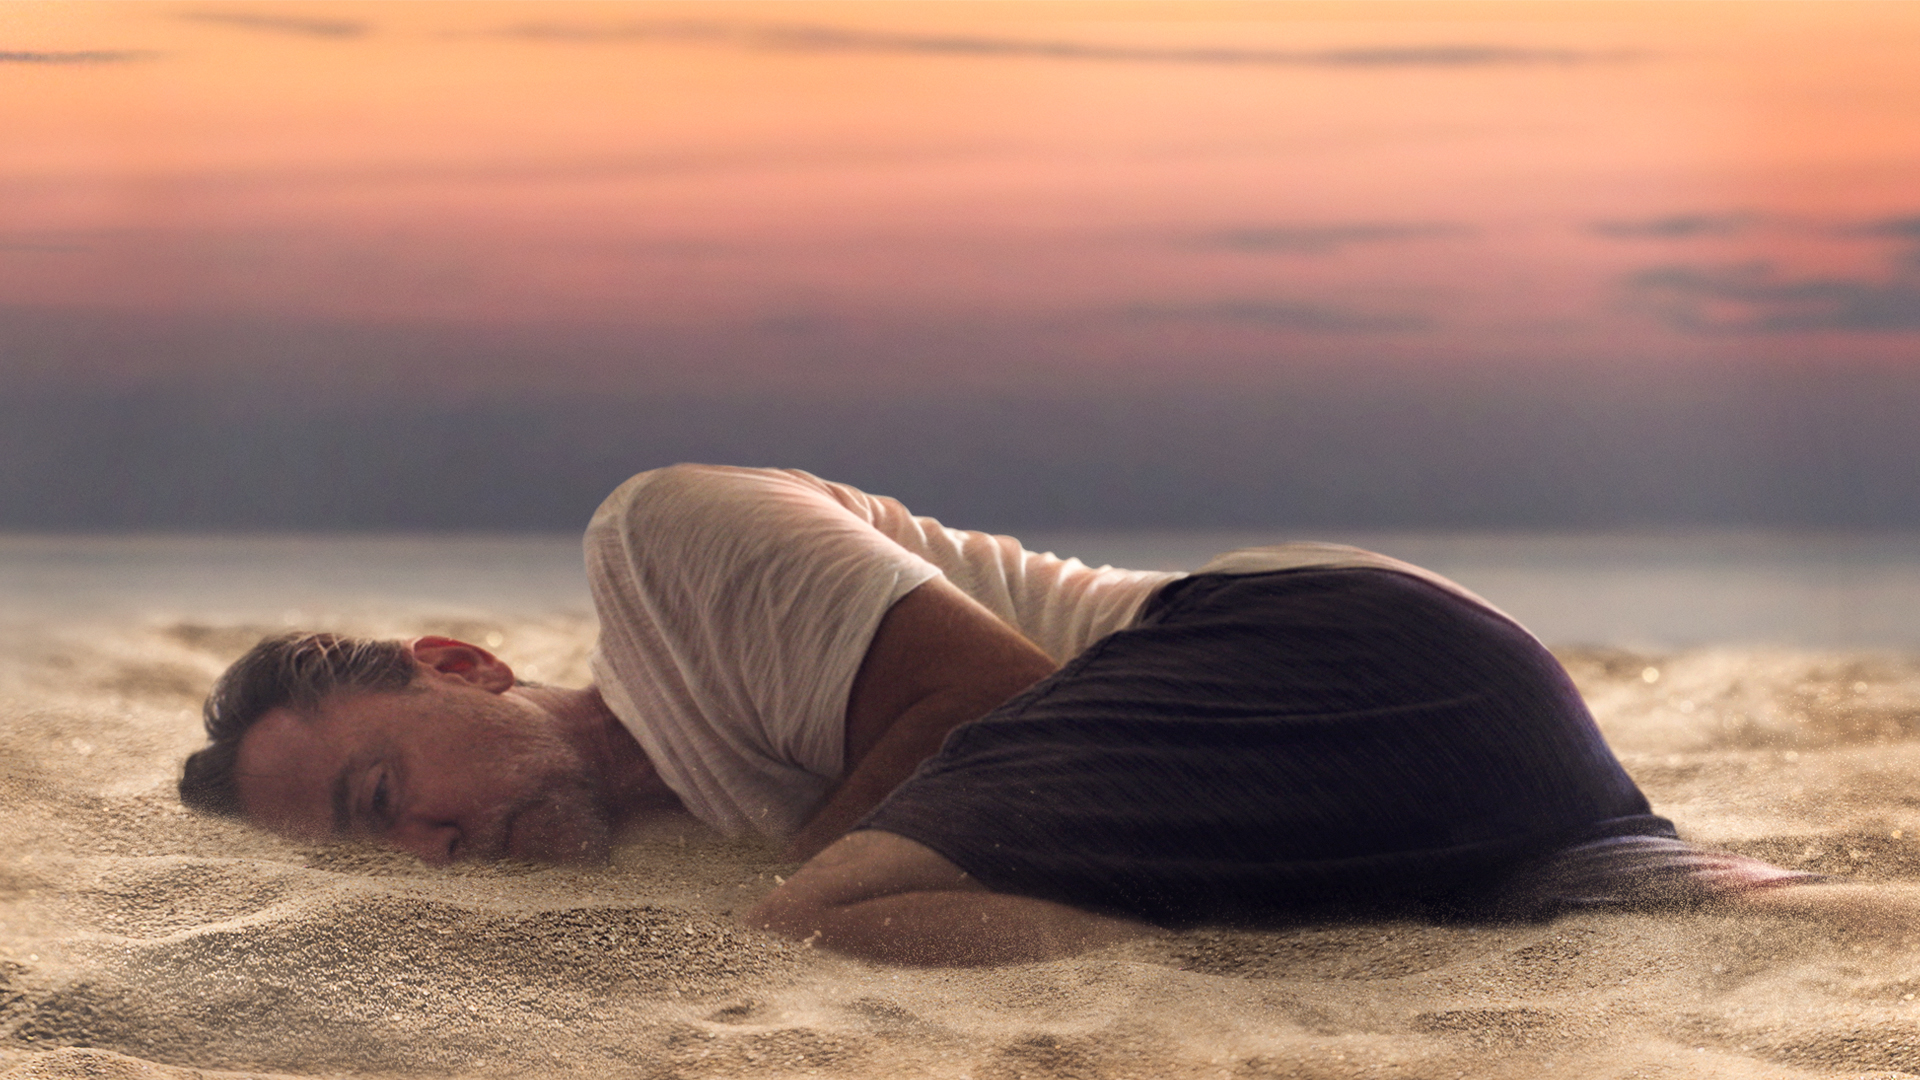 Mężczyzna leżący na plaży w pozycji skulonej, powoli pokryty pokrywa się przez piasek.